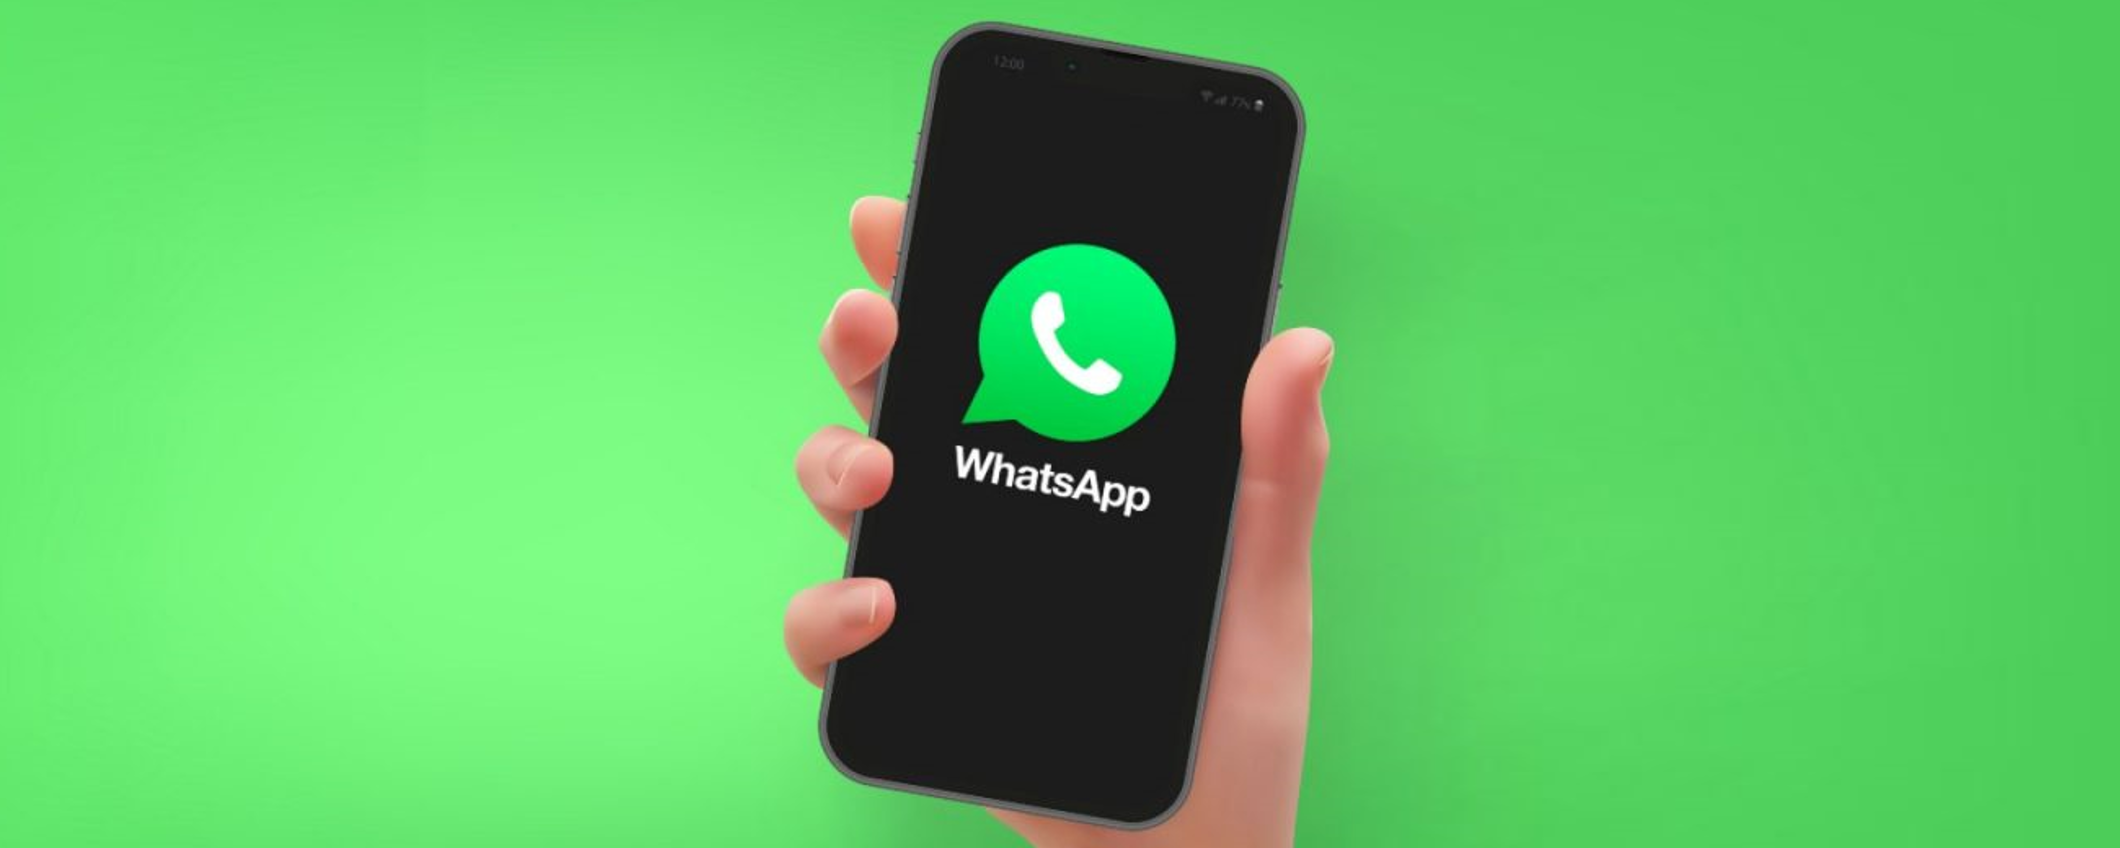 WhatsApp: in arrivo chiamate programmate e trascrizione dei vocali